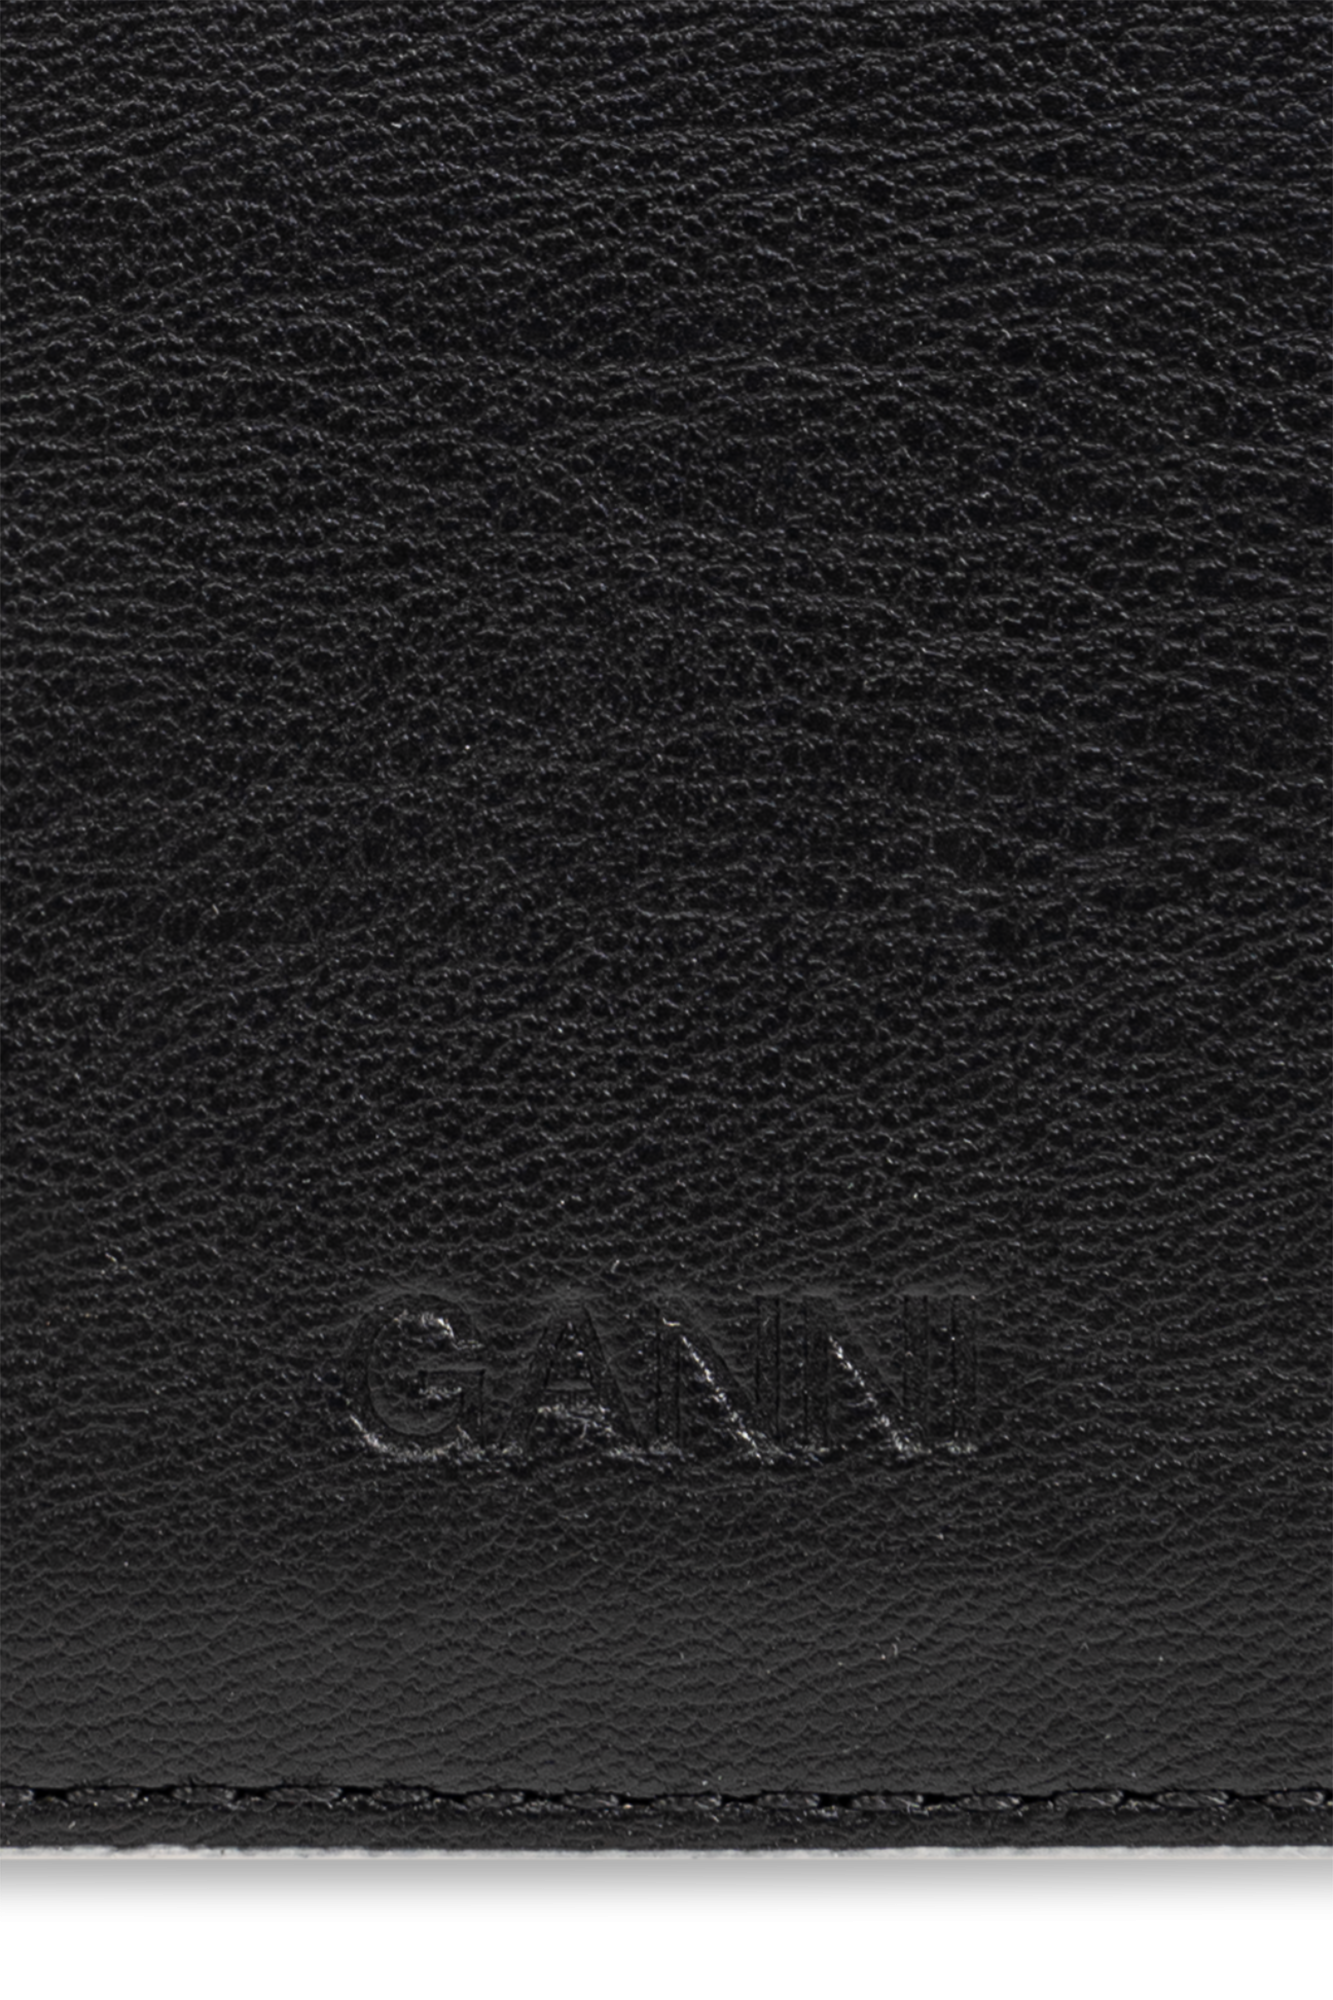 Ganni Card case with logo